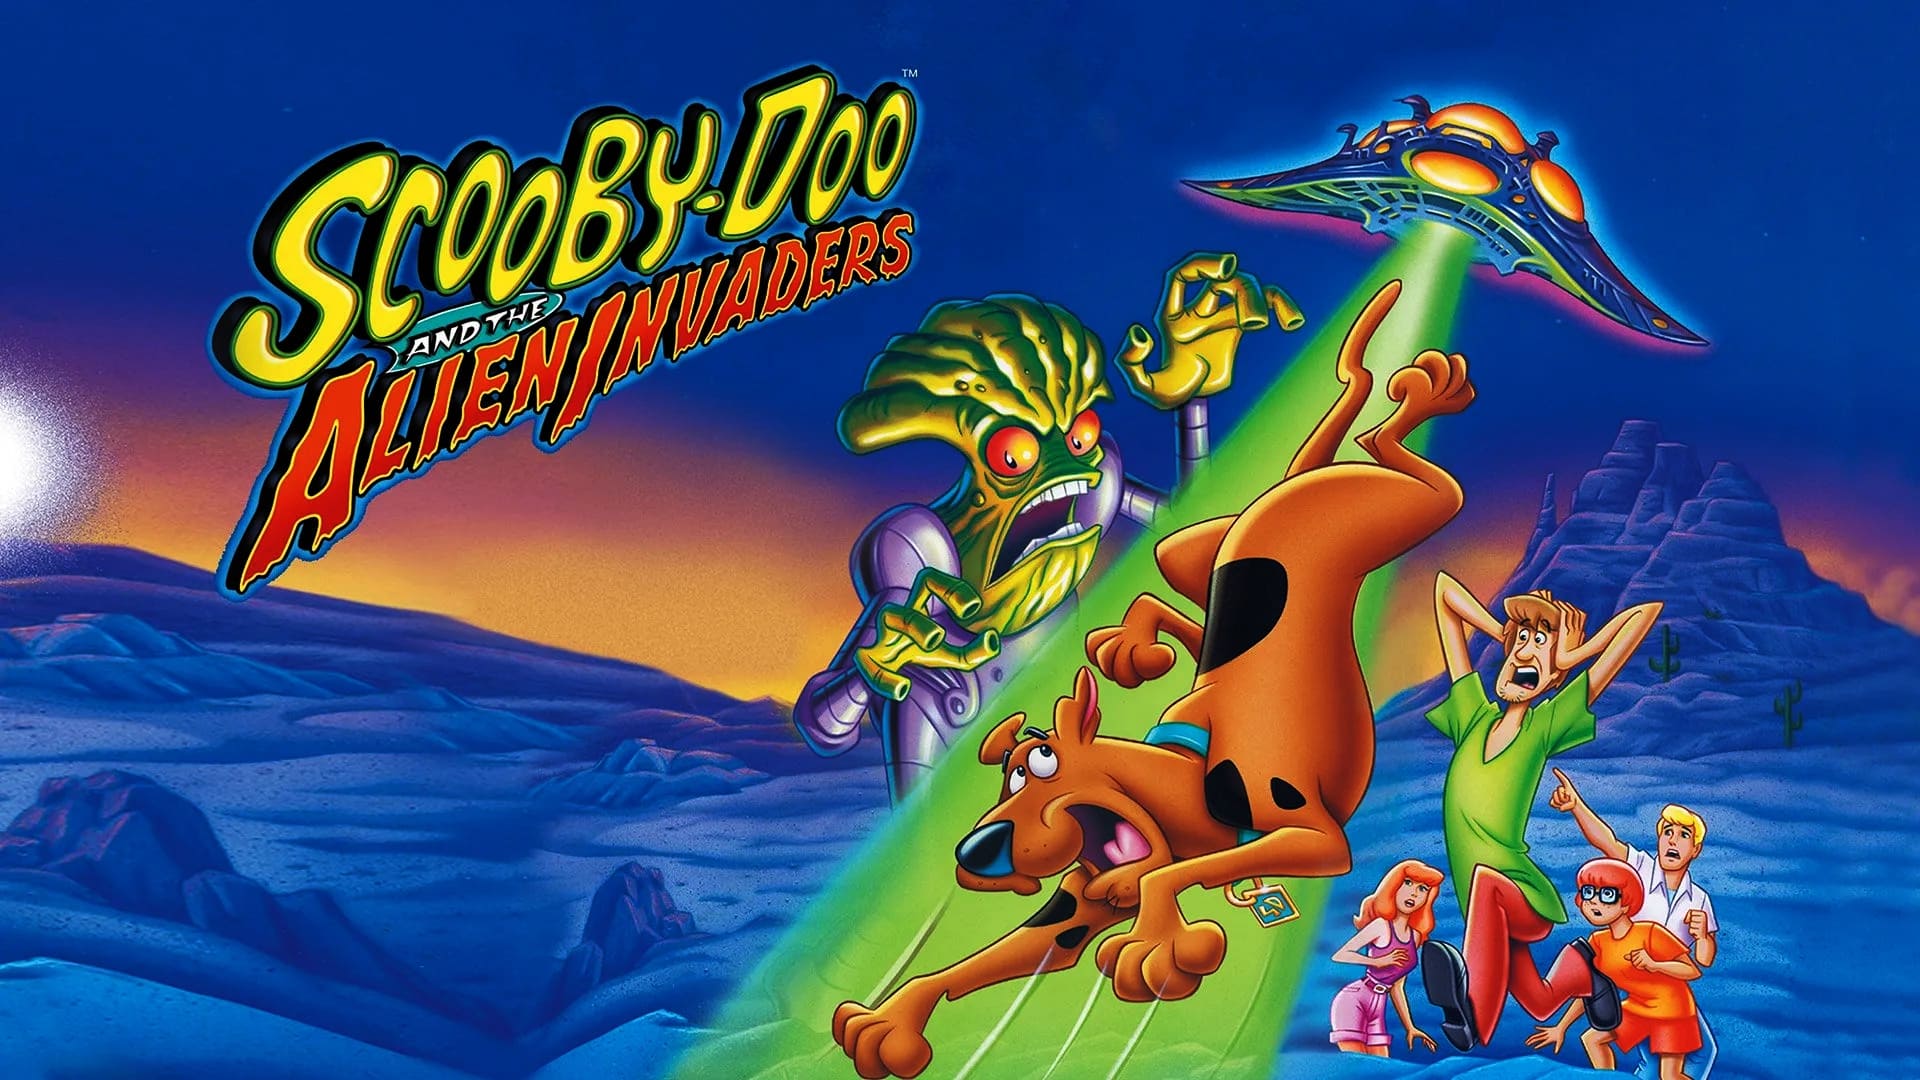 Scooby Doo i najeźdźcy z kosmosu (2000)